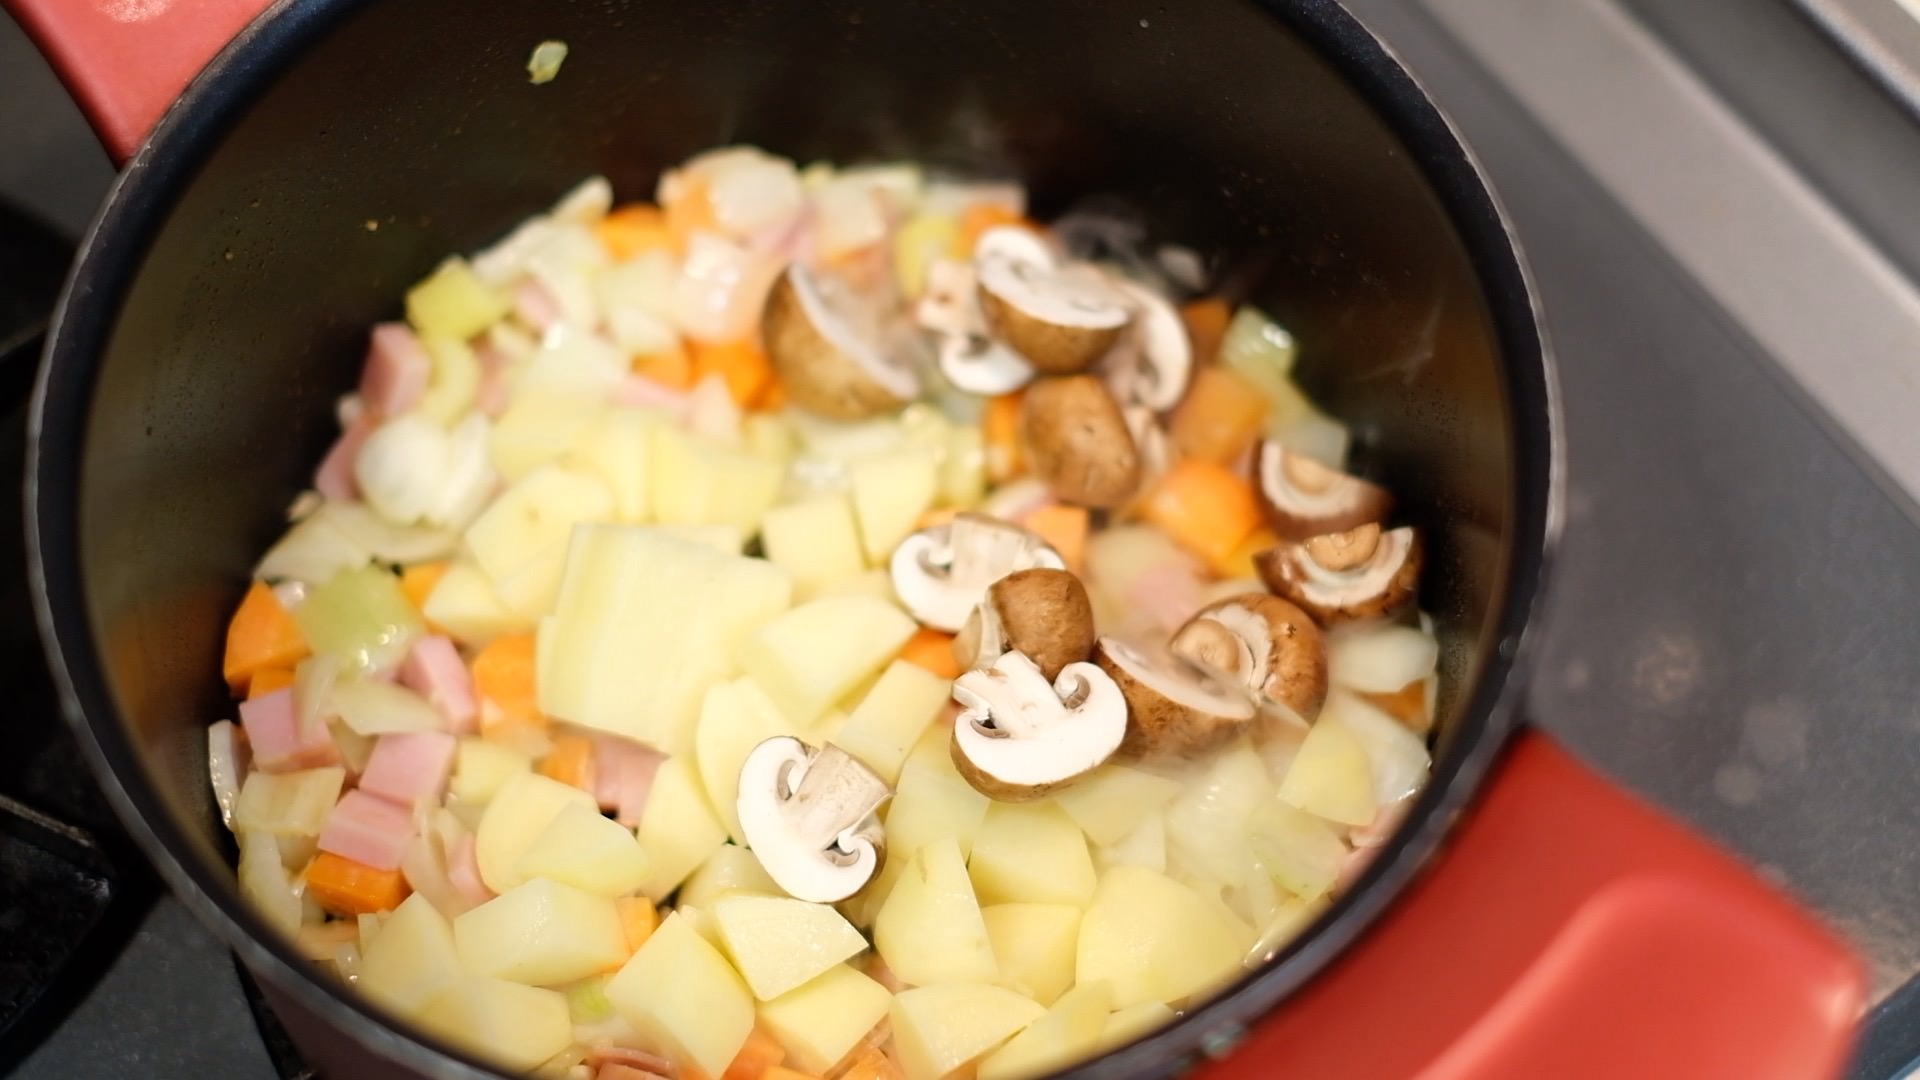 鍋にジャガイモとマッシュルームを加えた状態の画像です